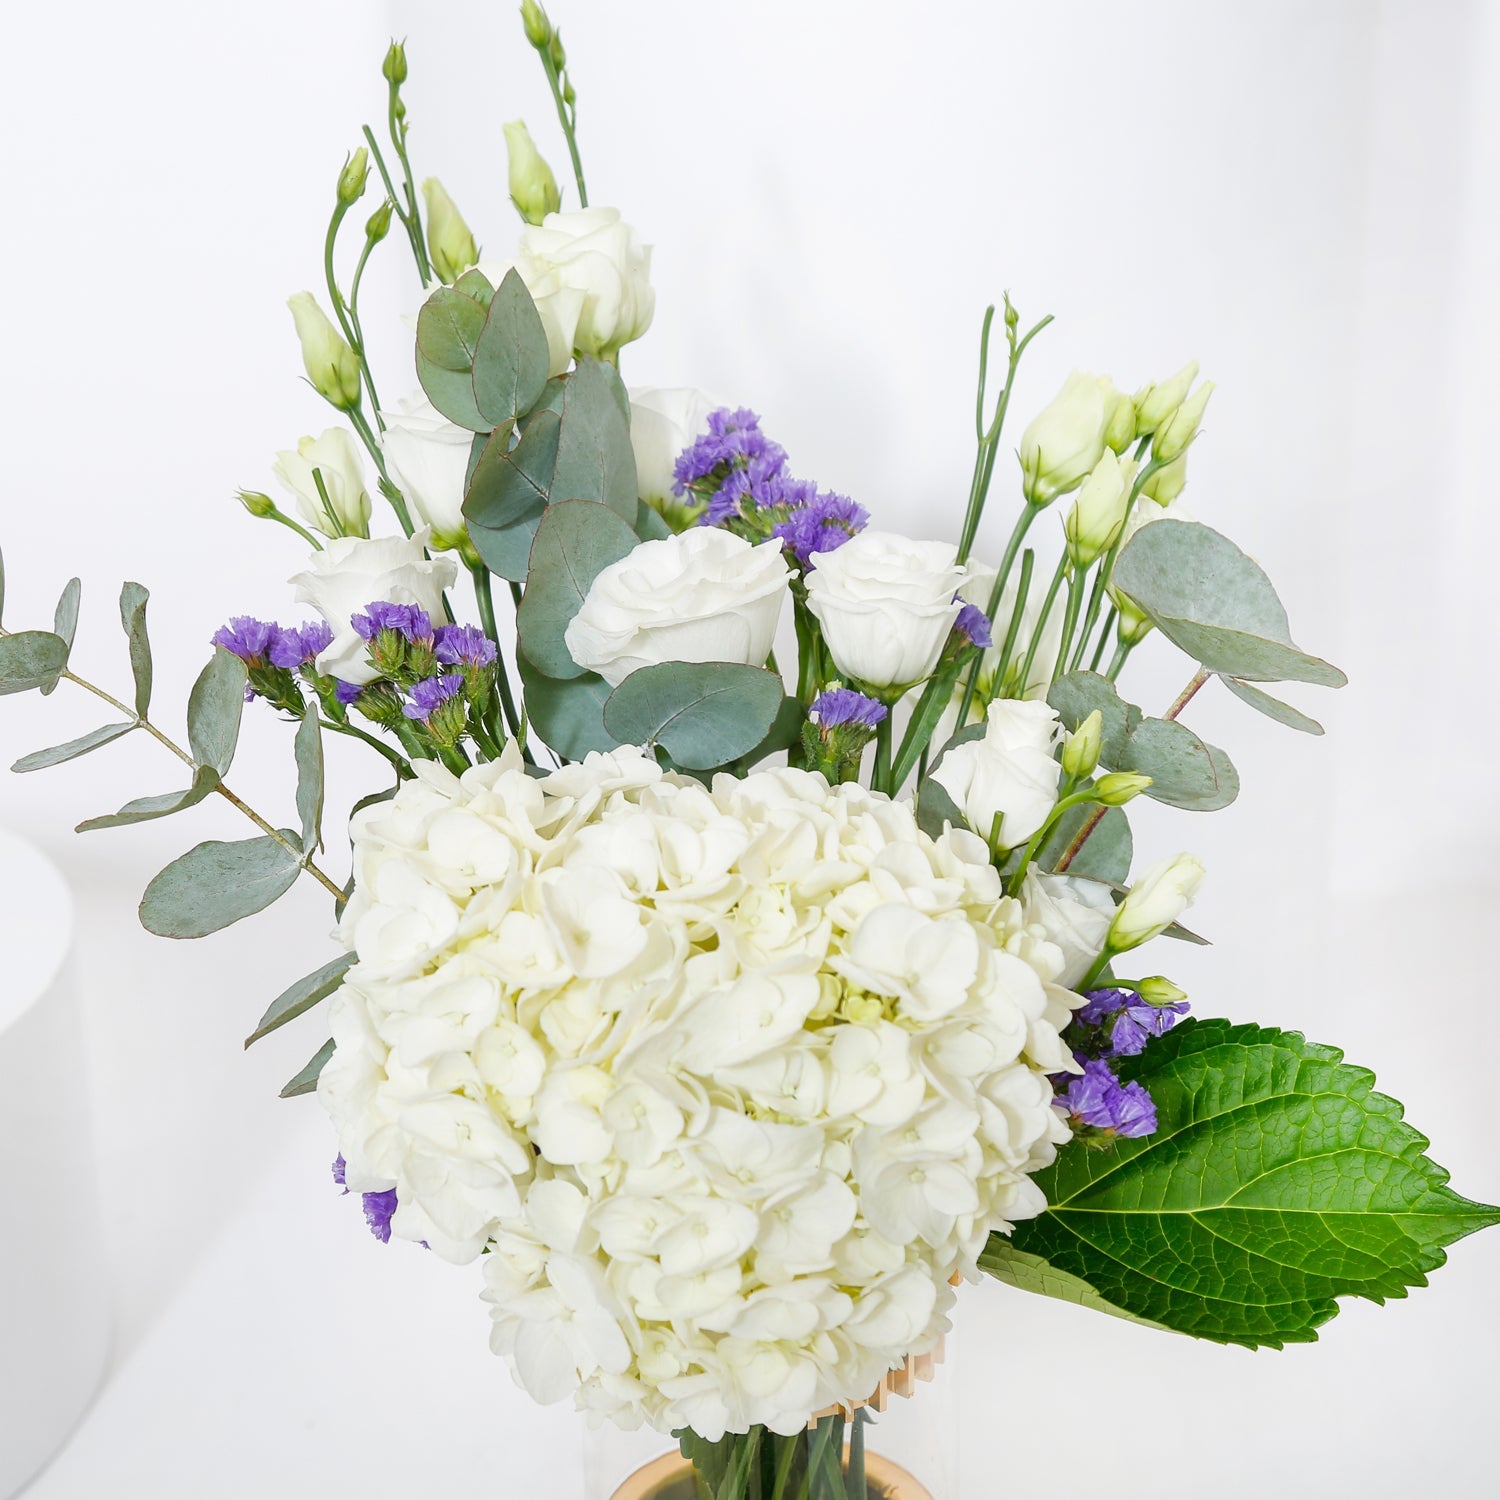 زهورالكوبية البيضاء مع توبر العمرة